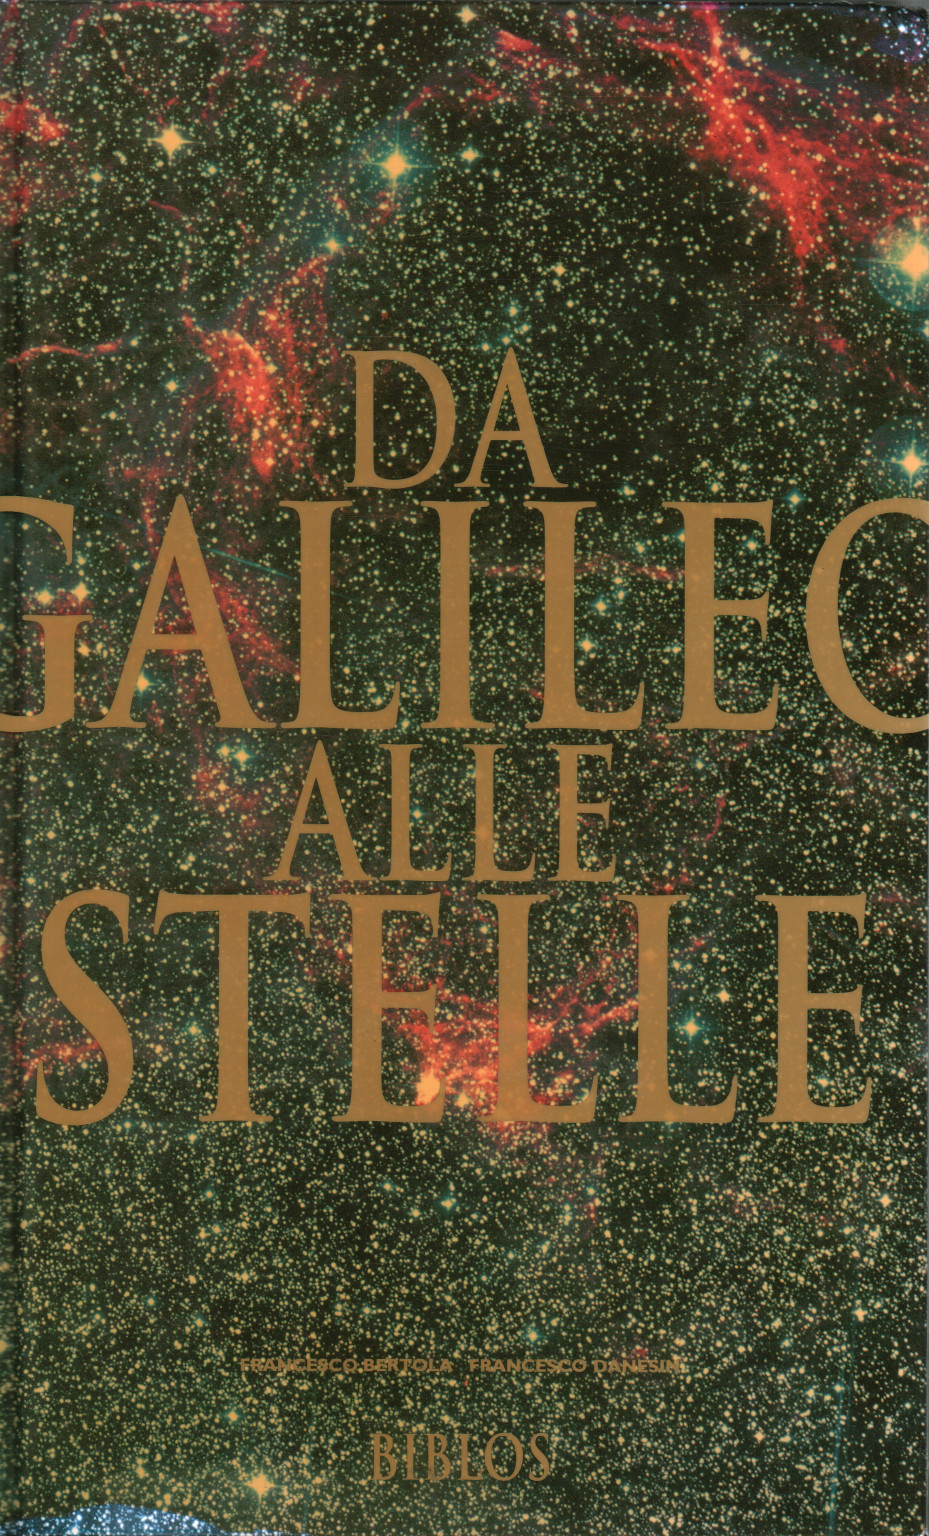 De Galileo a las estrellas, s.una.